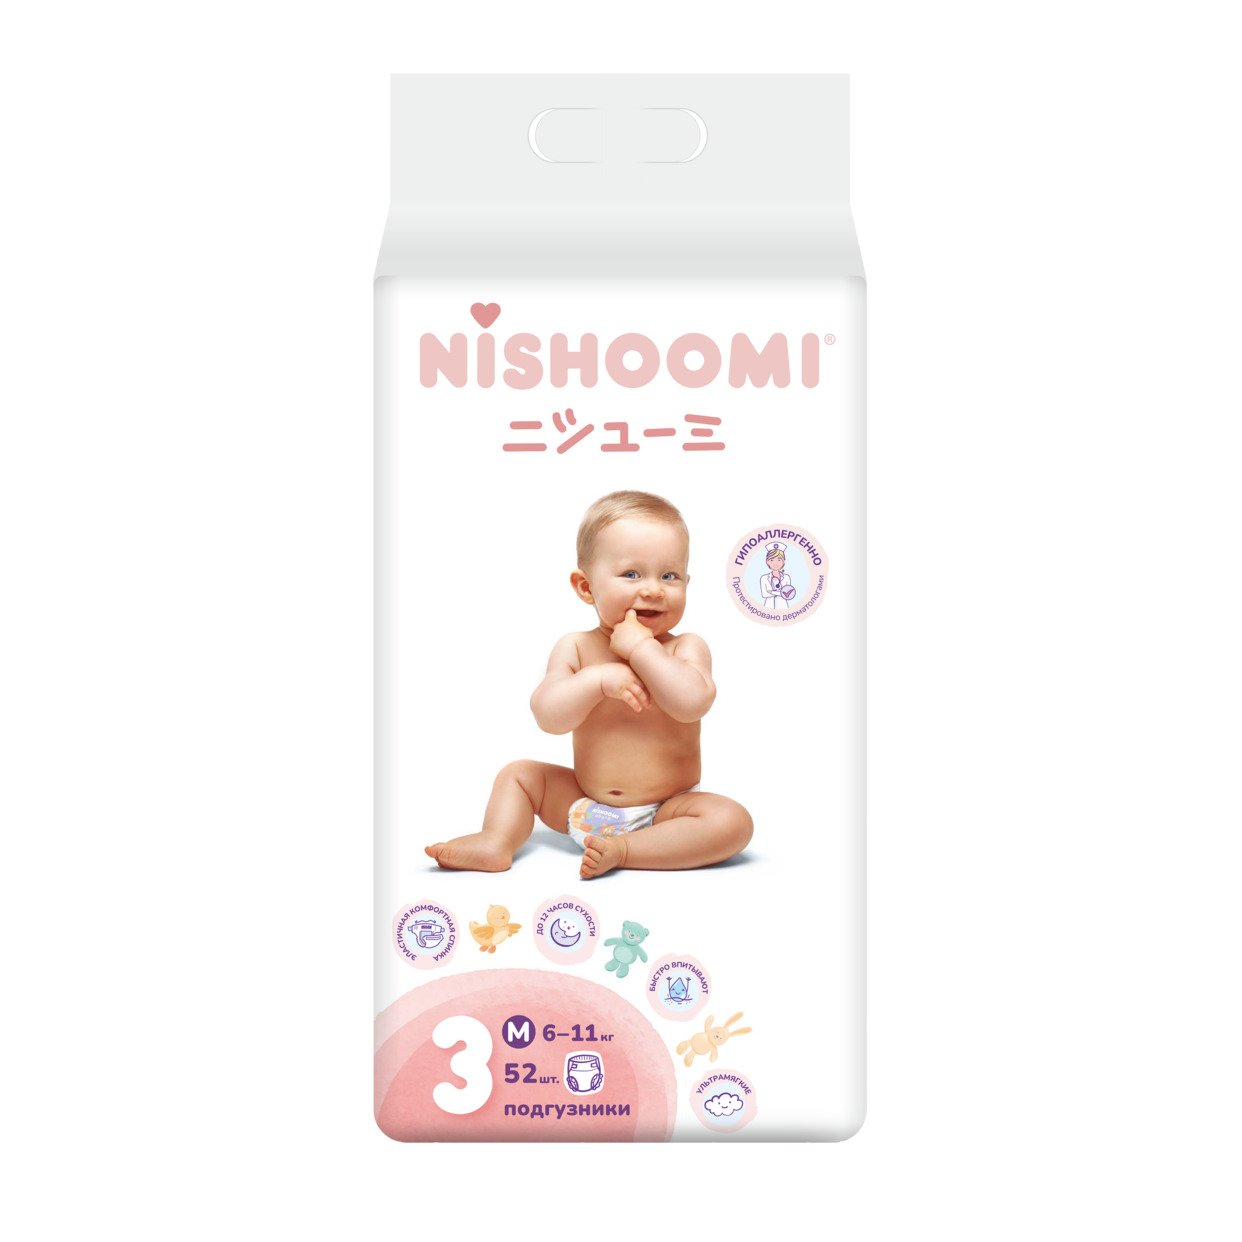 Изделия санитарно-гигиенические разового использования для ухода за детьми Nishoomi подгузники детские одноразовые. Размер Макси (М (3)), для детей весом 6-11 кг, 52 штуки в уп. по акции в Пятерочке